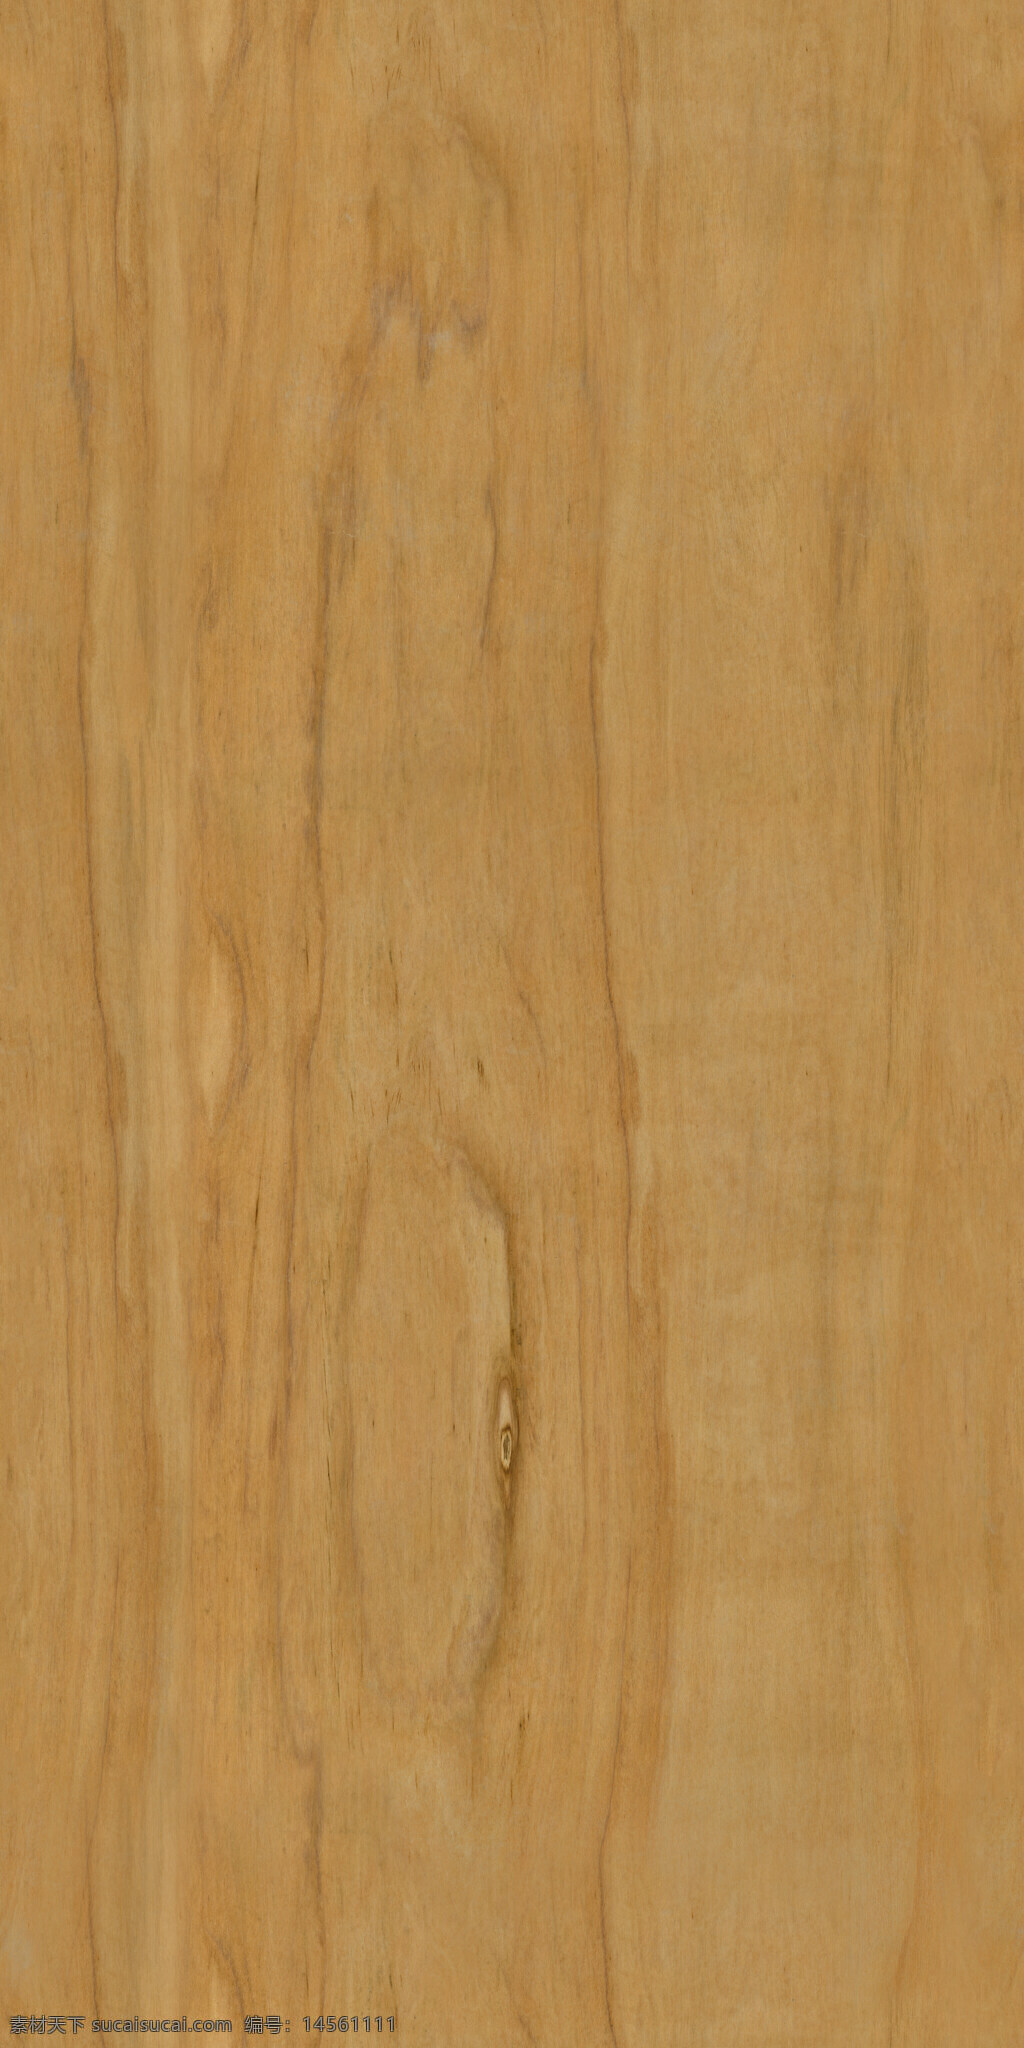 木纹图片 贴图 木纹 木头 黑胡桃 花梨 地板 地板砖 大理石砖 金色 纹理 墙纸 地面 墙面